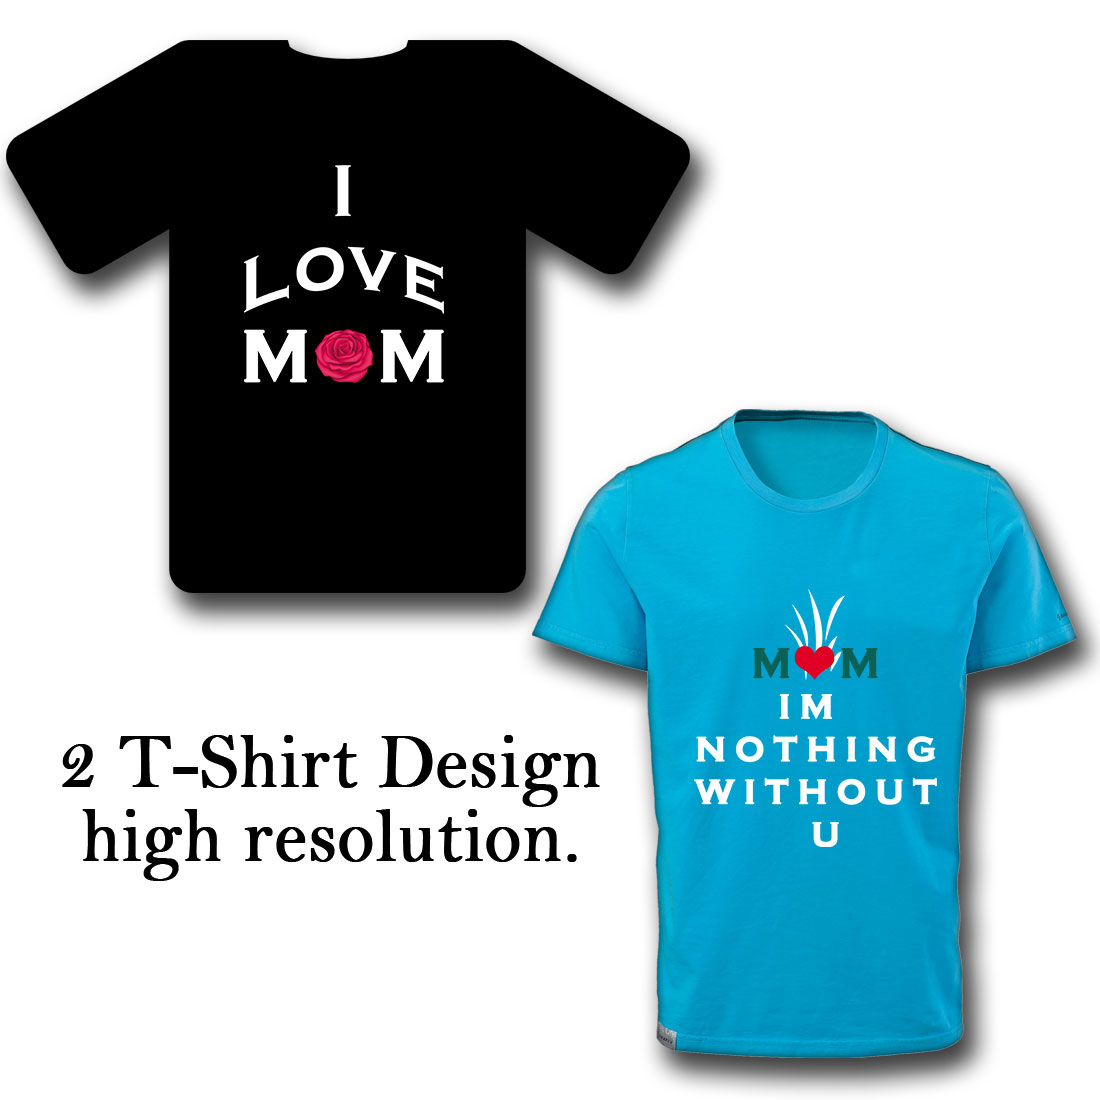 T-Shirt I Love U Mother Design cover image.